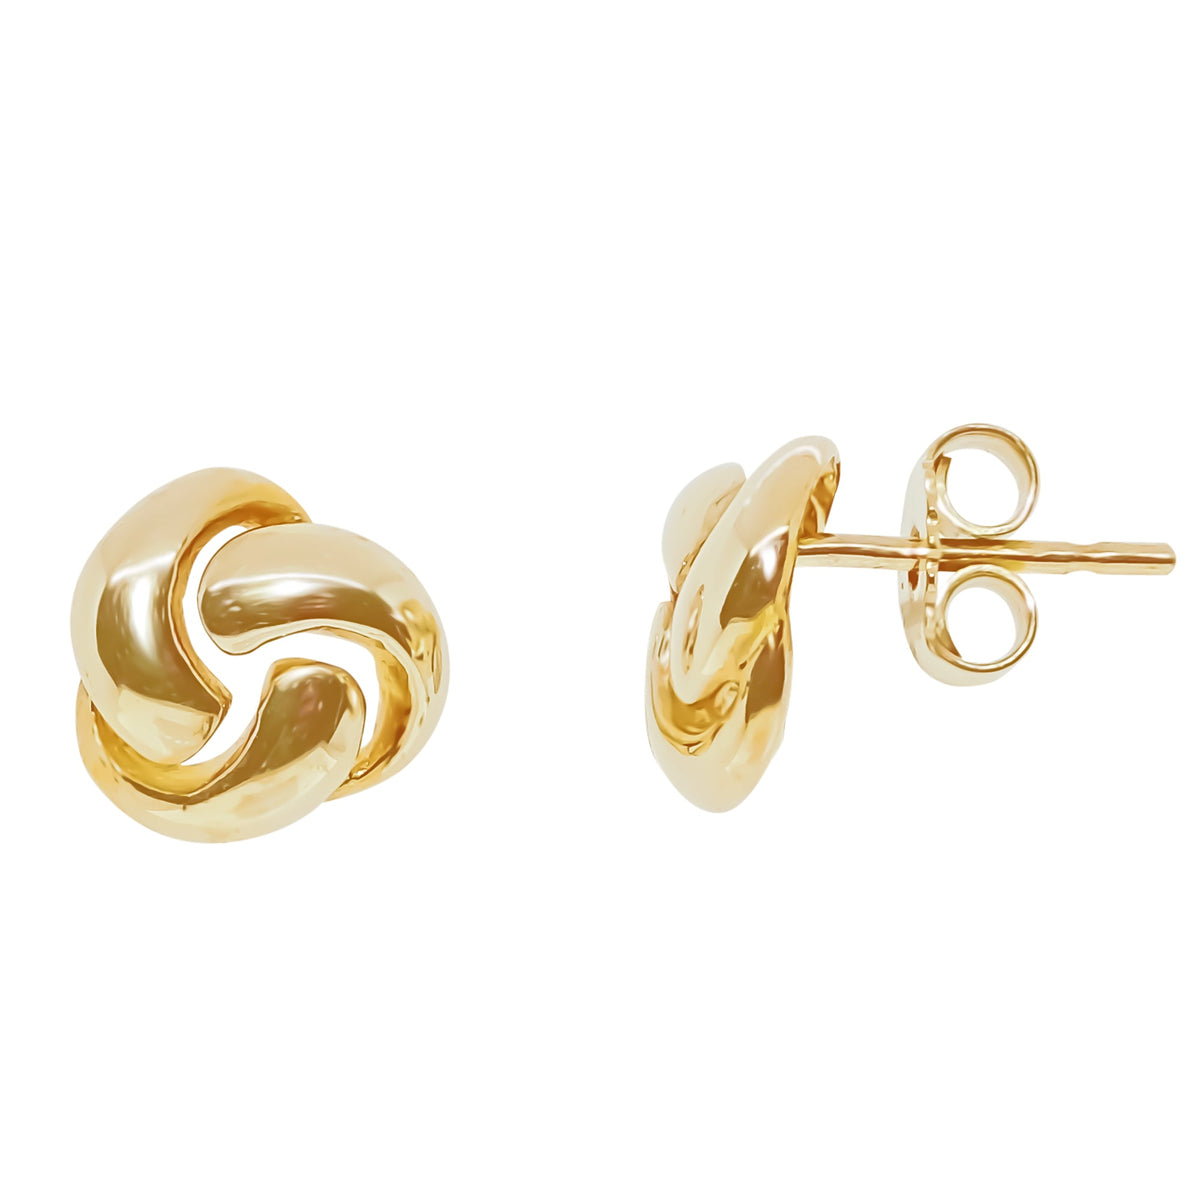 9ct gold triple swirl knot stud earrings